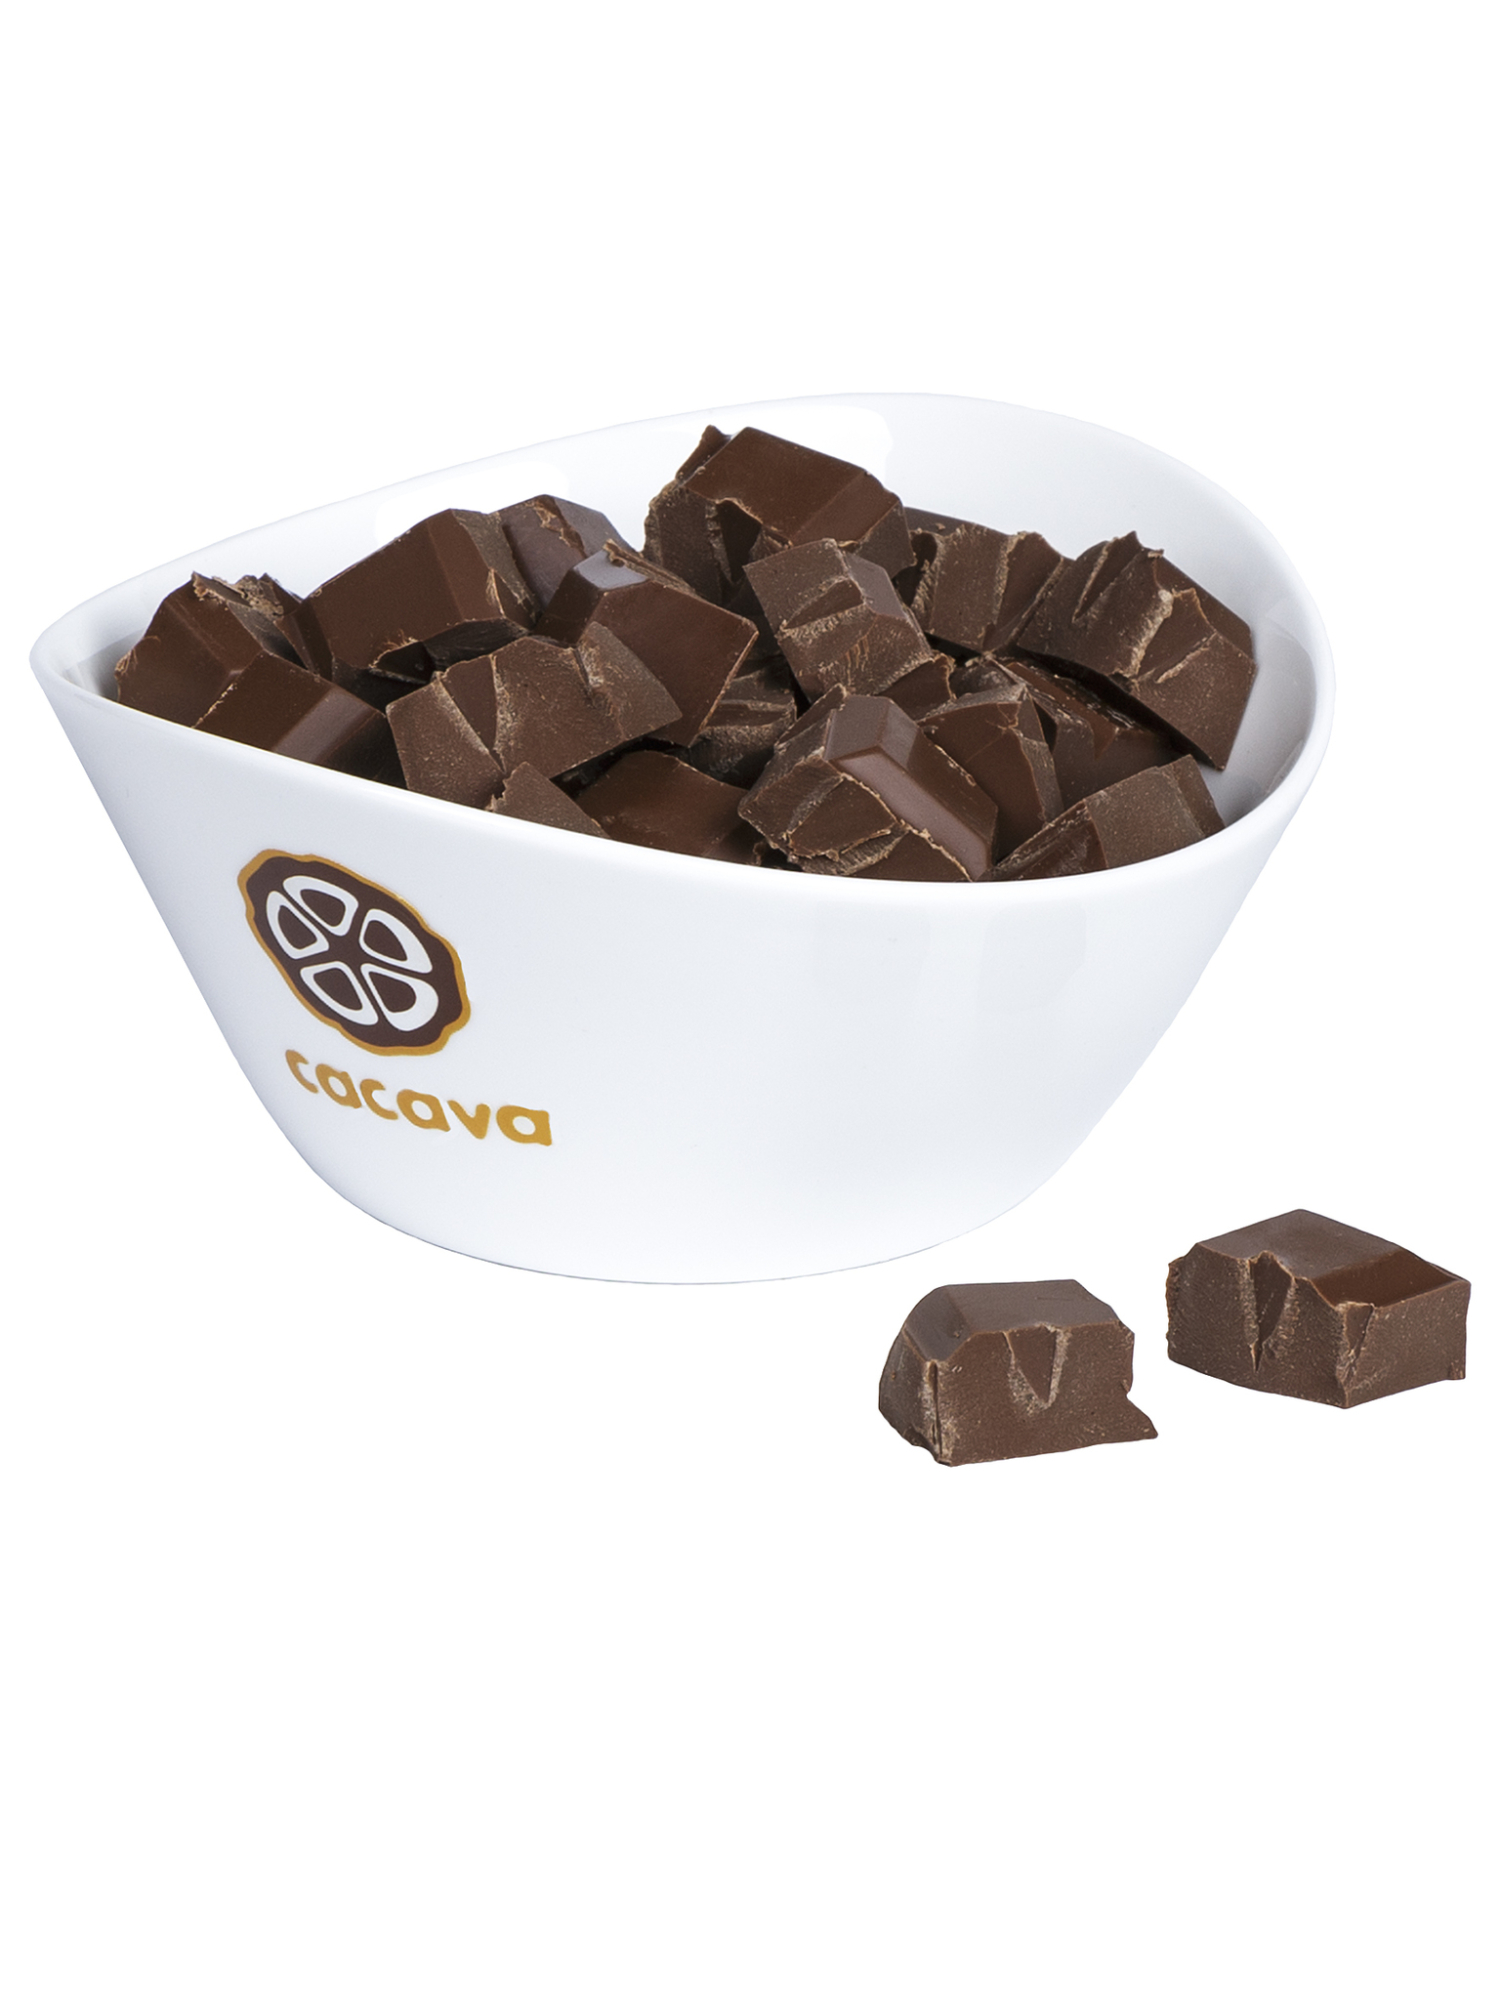 Молочный шоколад 40 % какао, на кокосовом сахаре (Перу) 100гр. купить